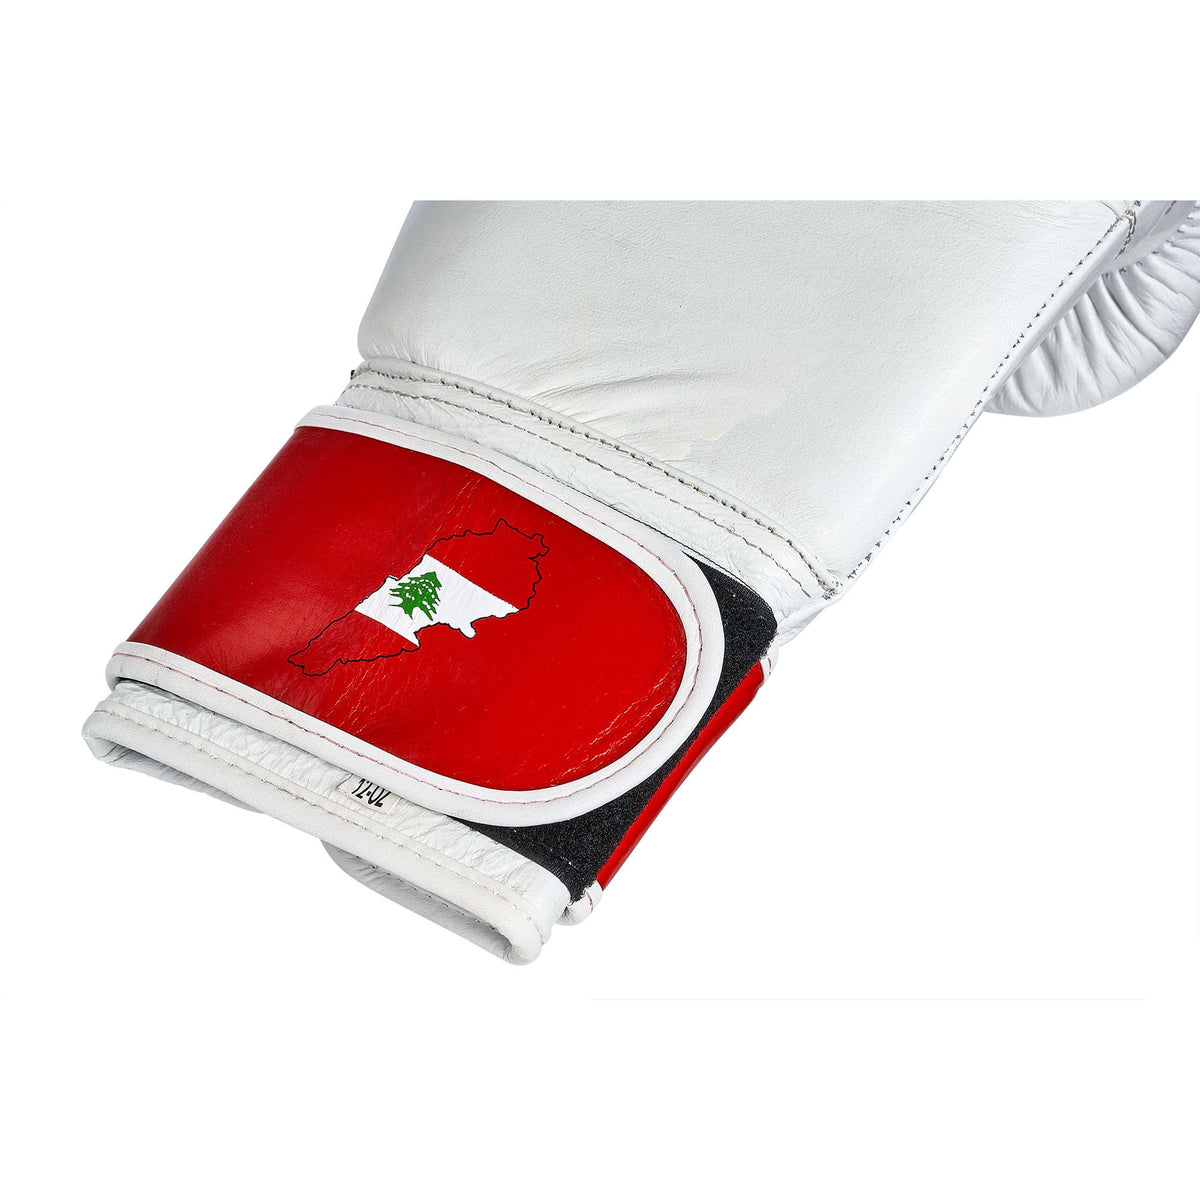 Nahaufnahme des Klettverschlusses am Handgelenk libanesischer Boxhandschuhe, die den Umriss des Libanons und die libanesische Flagge integriert zeigen. Diese Detailaufnahme unterstreicht das einzigartige Design, das die Handschuhe ziert, und betont gleichzeitig die hohe Qualität und Funktionalität. Hergestellt aus strapazierfähigem Leder, sichern die Handschuhe Langlebigkeit und bieten optimalen Schutz für Boxer aller Erfahrungsstufen.